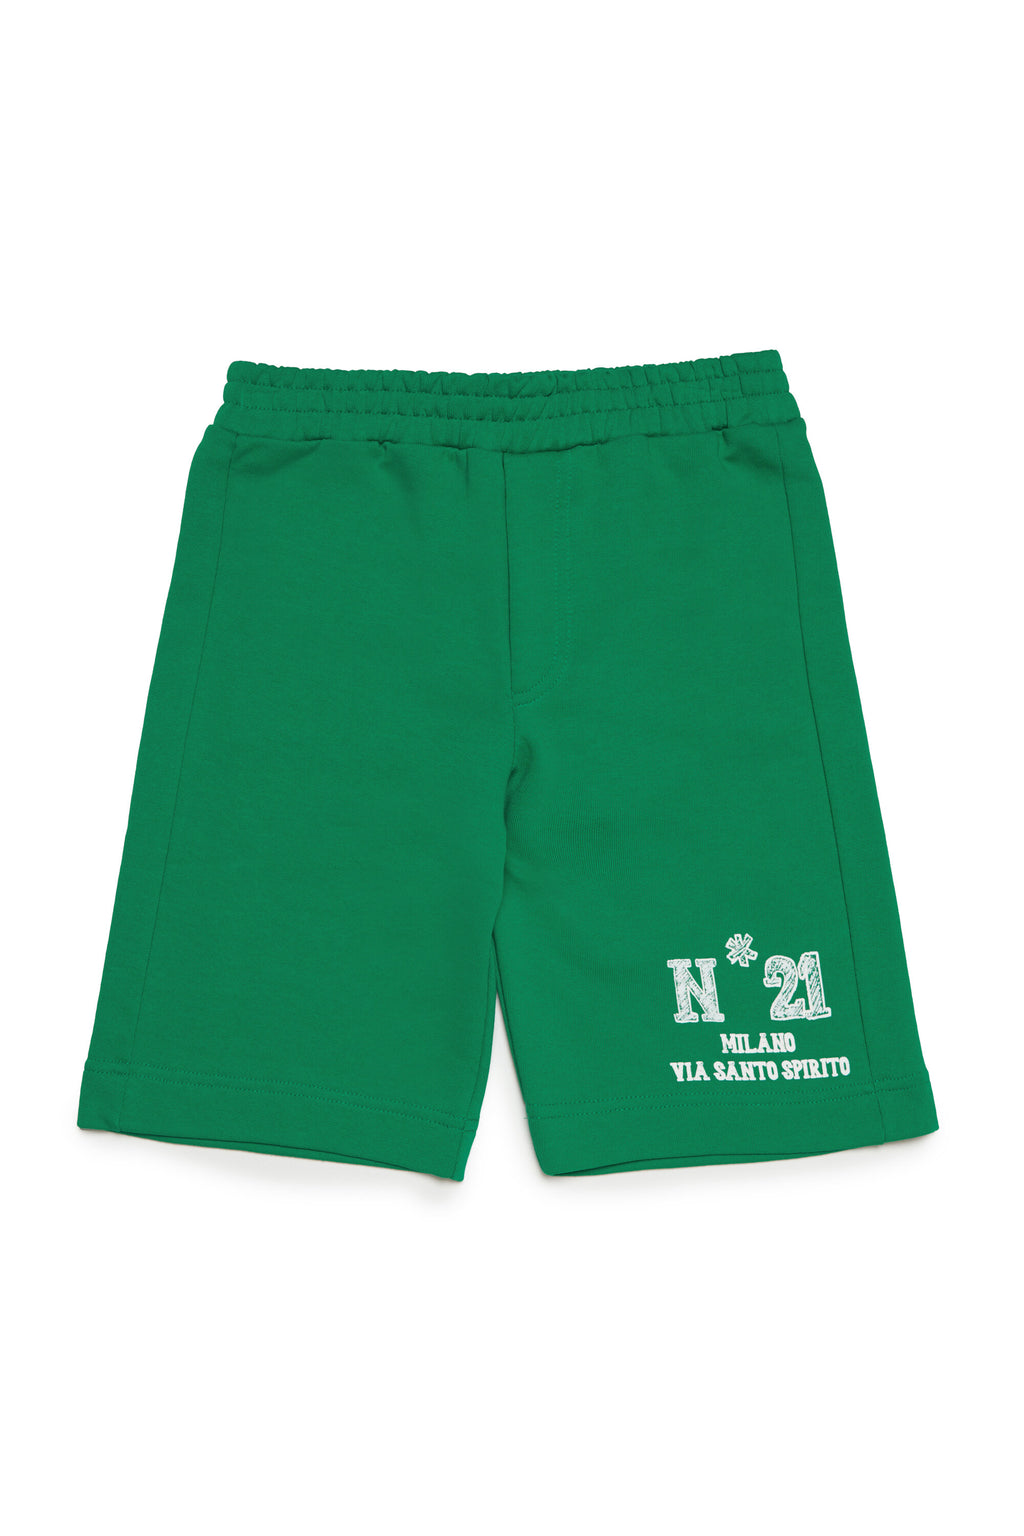 Pantalones cortos en chándal con logotipo N°21 Milano